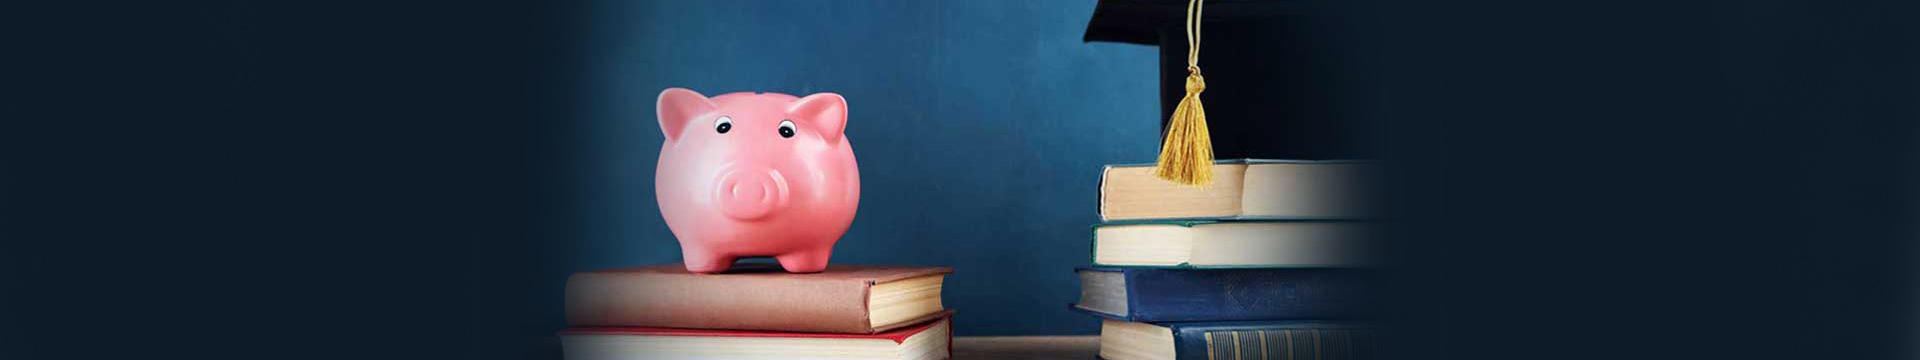 เป็นนักศึกษาอยากลงทุน ต้องเริ่มออมเงินอย่างไร?